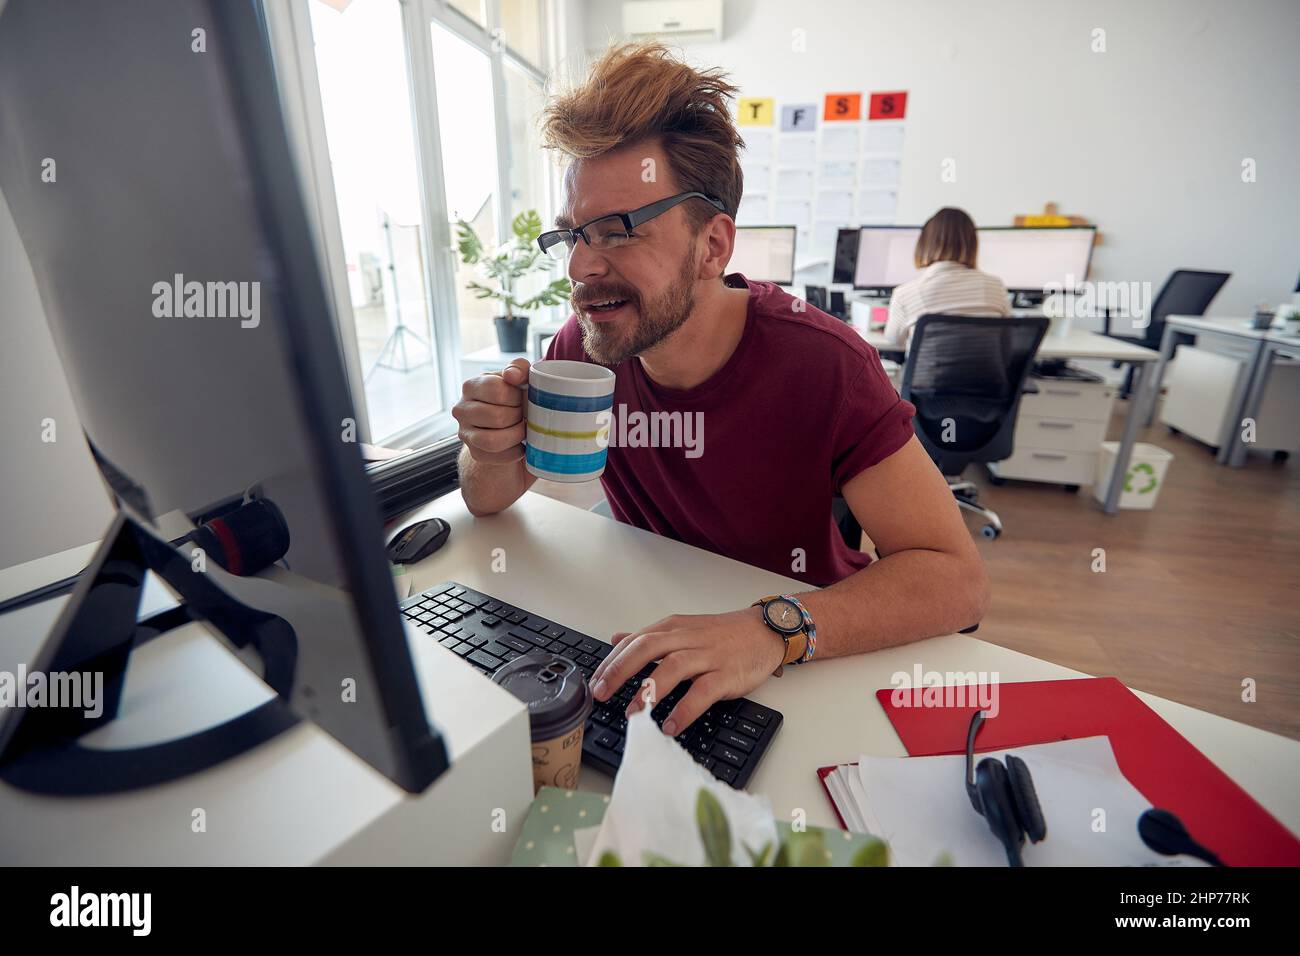 Un jeune employé de sexe masculin boit un café tout en travaillant dans une atmosphère uniforme au bureau. Employés, travail, bureau Banque D'Images